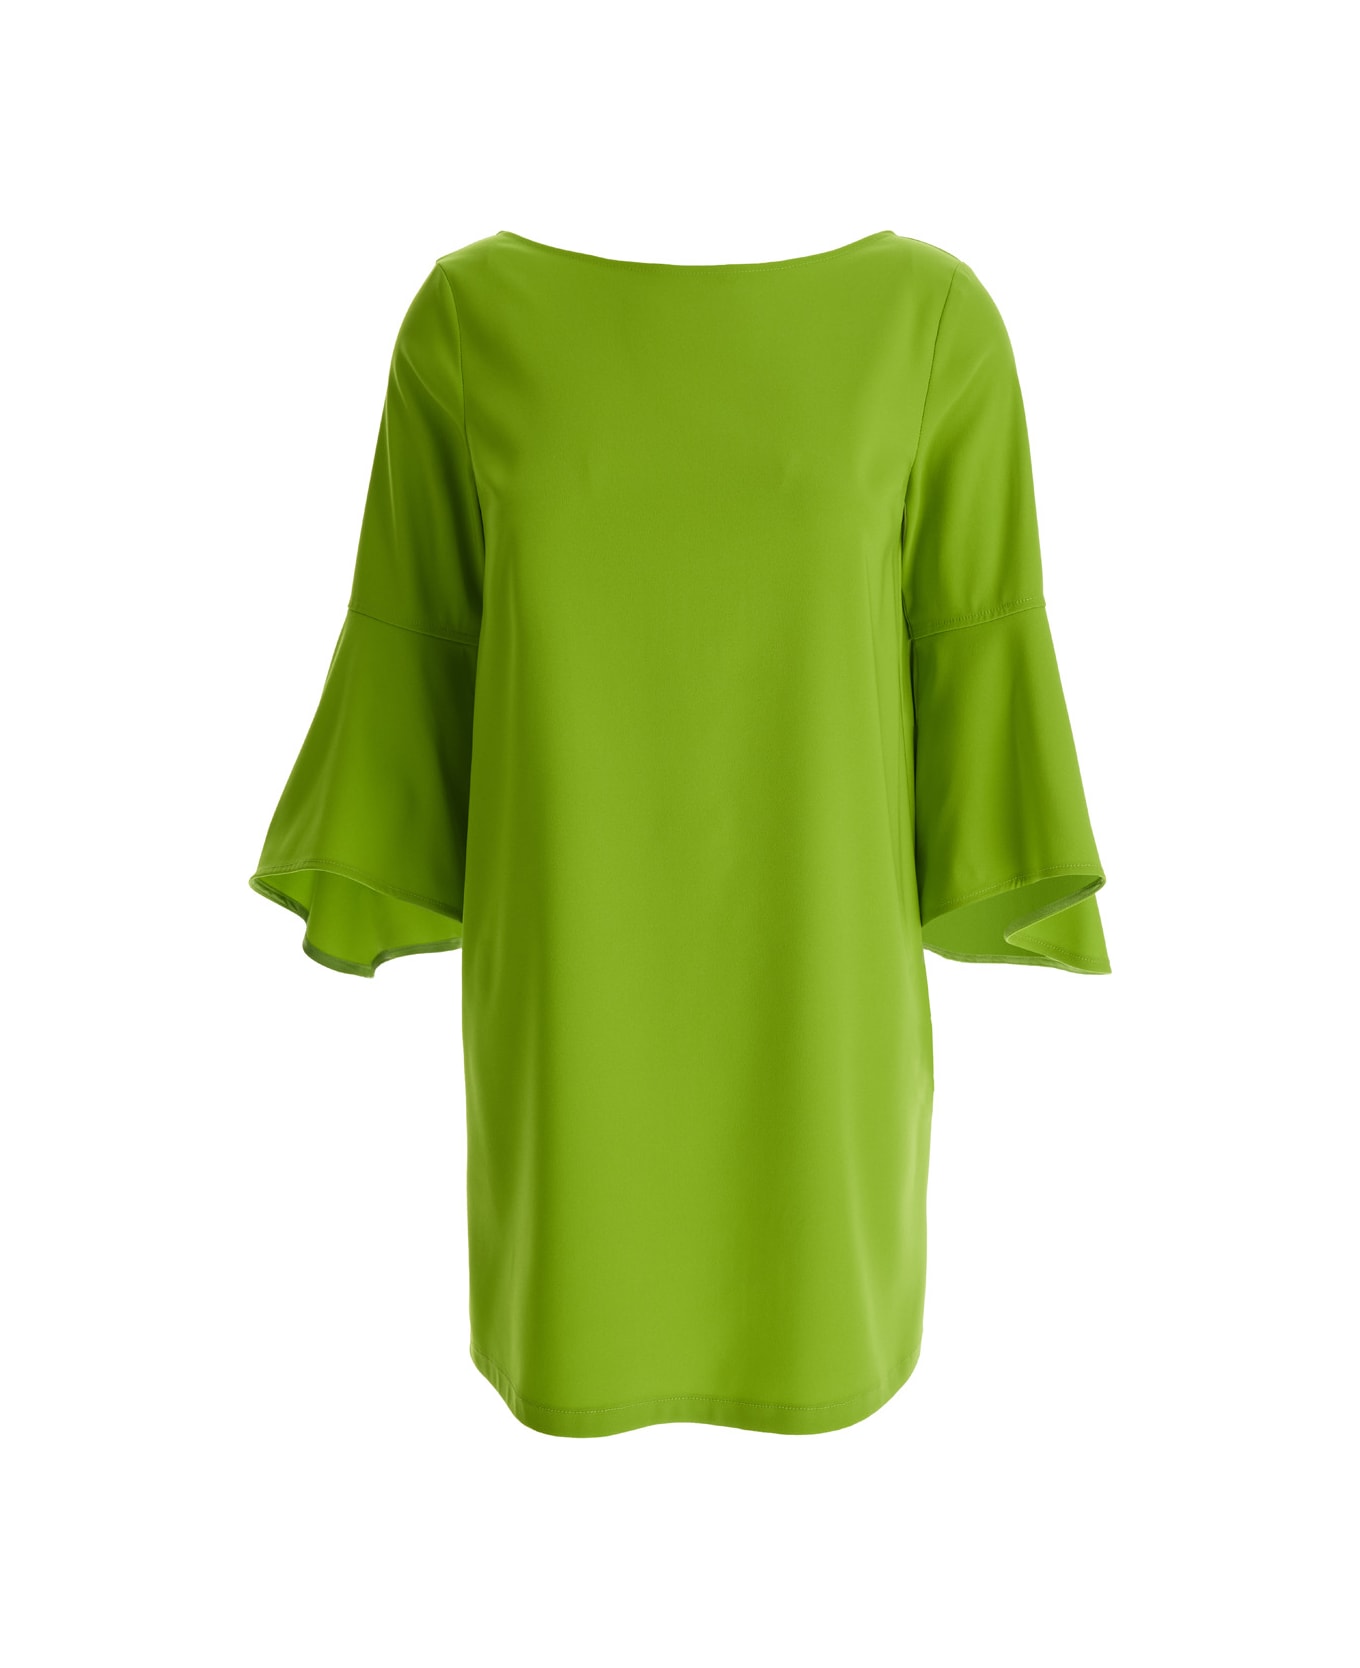 Liu-Jo Lime Green Bell-sleeve Mini Dress In Crepe Fabric Woman - Green